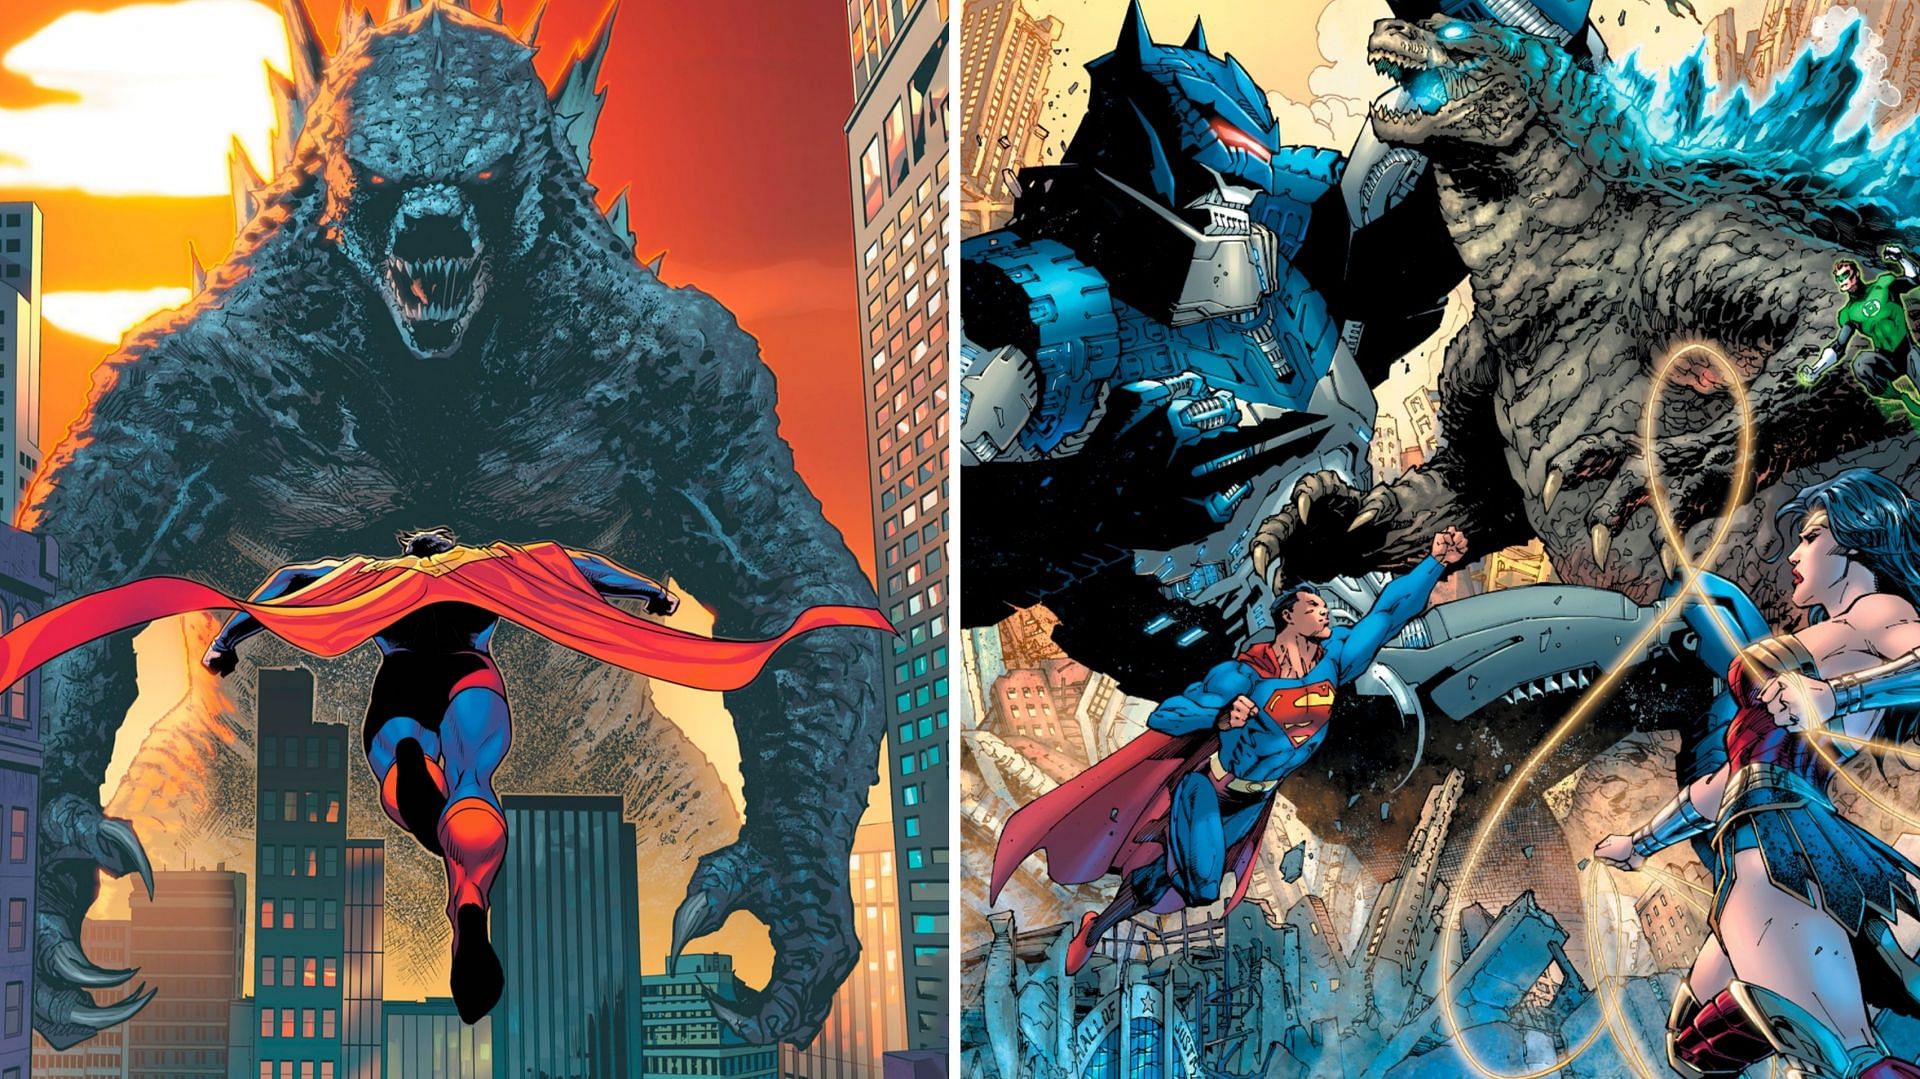 Stills from Justice League vs Godzilla vs Kong (Images via DC Comics)